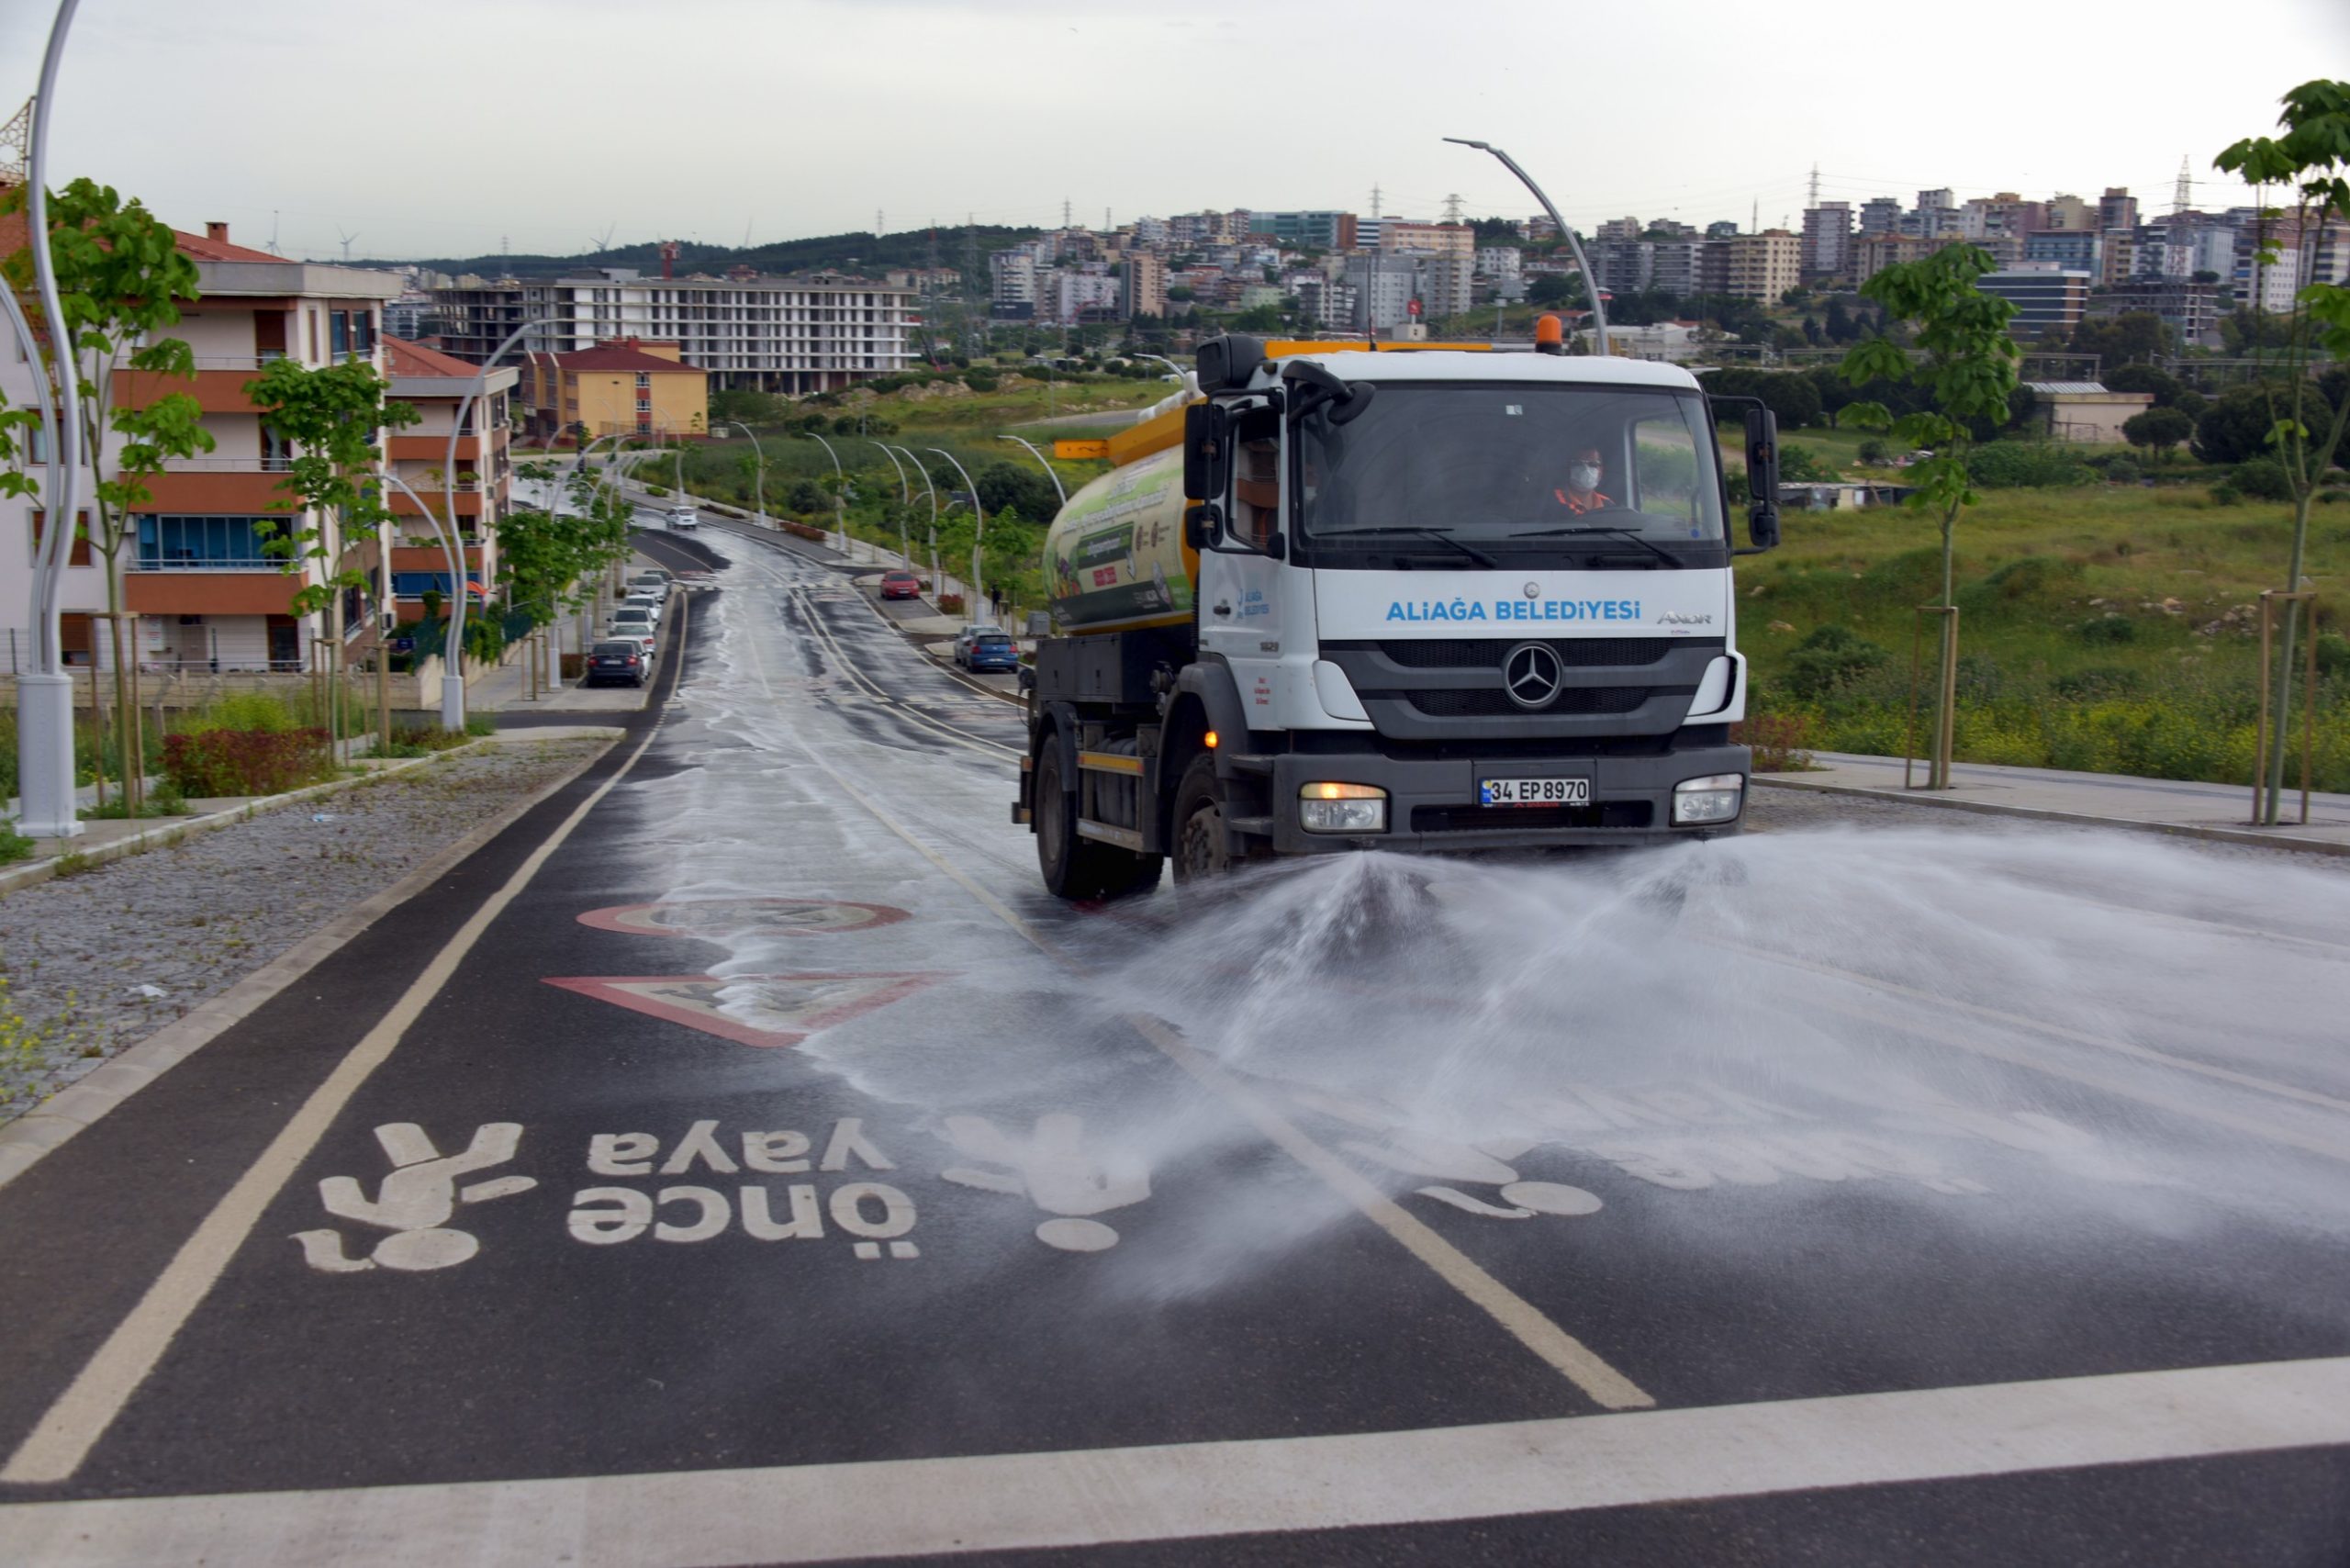 Aliağa Belediyesi’nden Bayram Temizliği İzmir-Aliağa (08.05.2021)- Aliağa Belediyesi Temizlik İşleri Müdürlüğü, Ramazan Bayramı’na sayılı günler kala rutin çalışmalarına ek olarak kentin cadde ve sokaklarında genel temizlik çalışması başlattı.